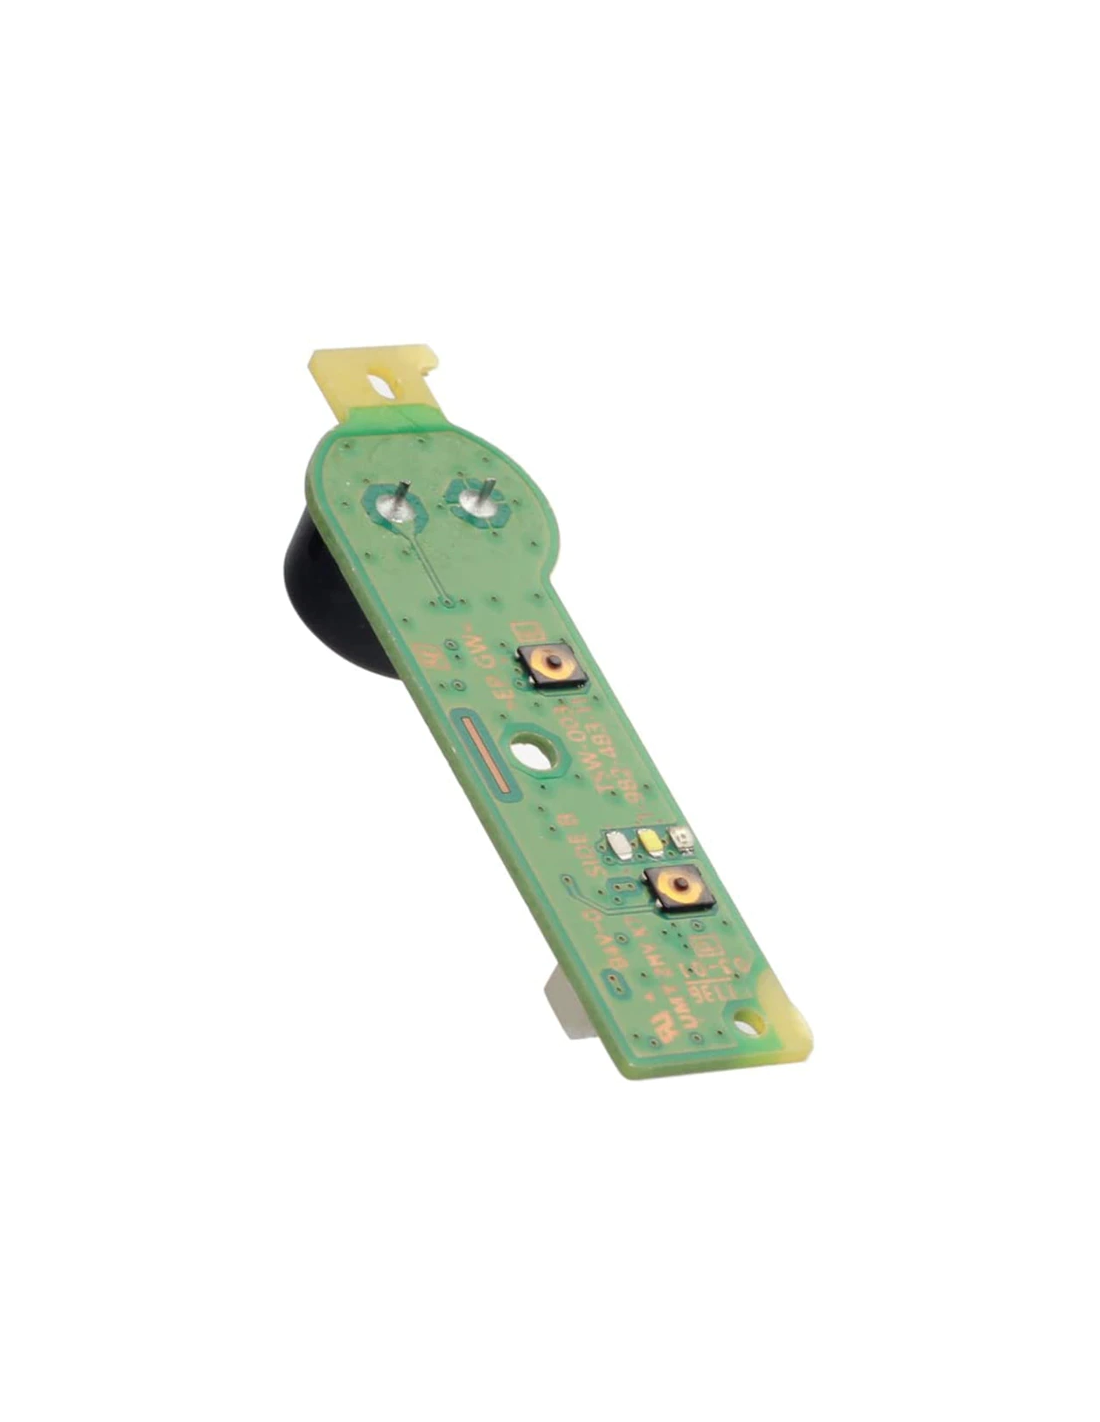 Nappe lecteur Carte-Mère 9 Pin pour Playstation 4 Slim / Pro / PS4 / KEM-496